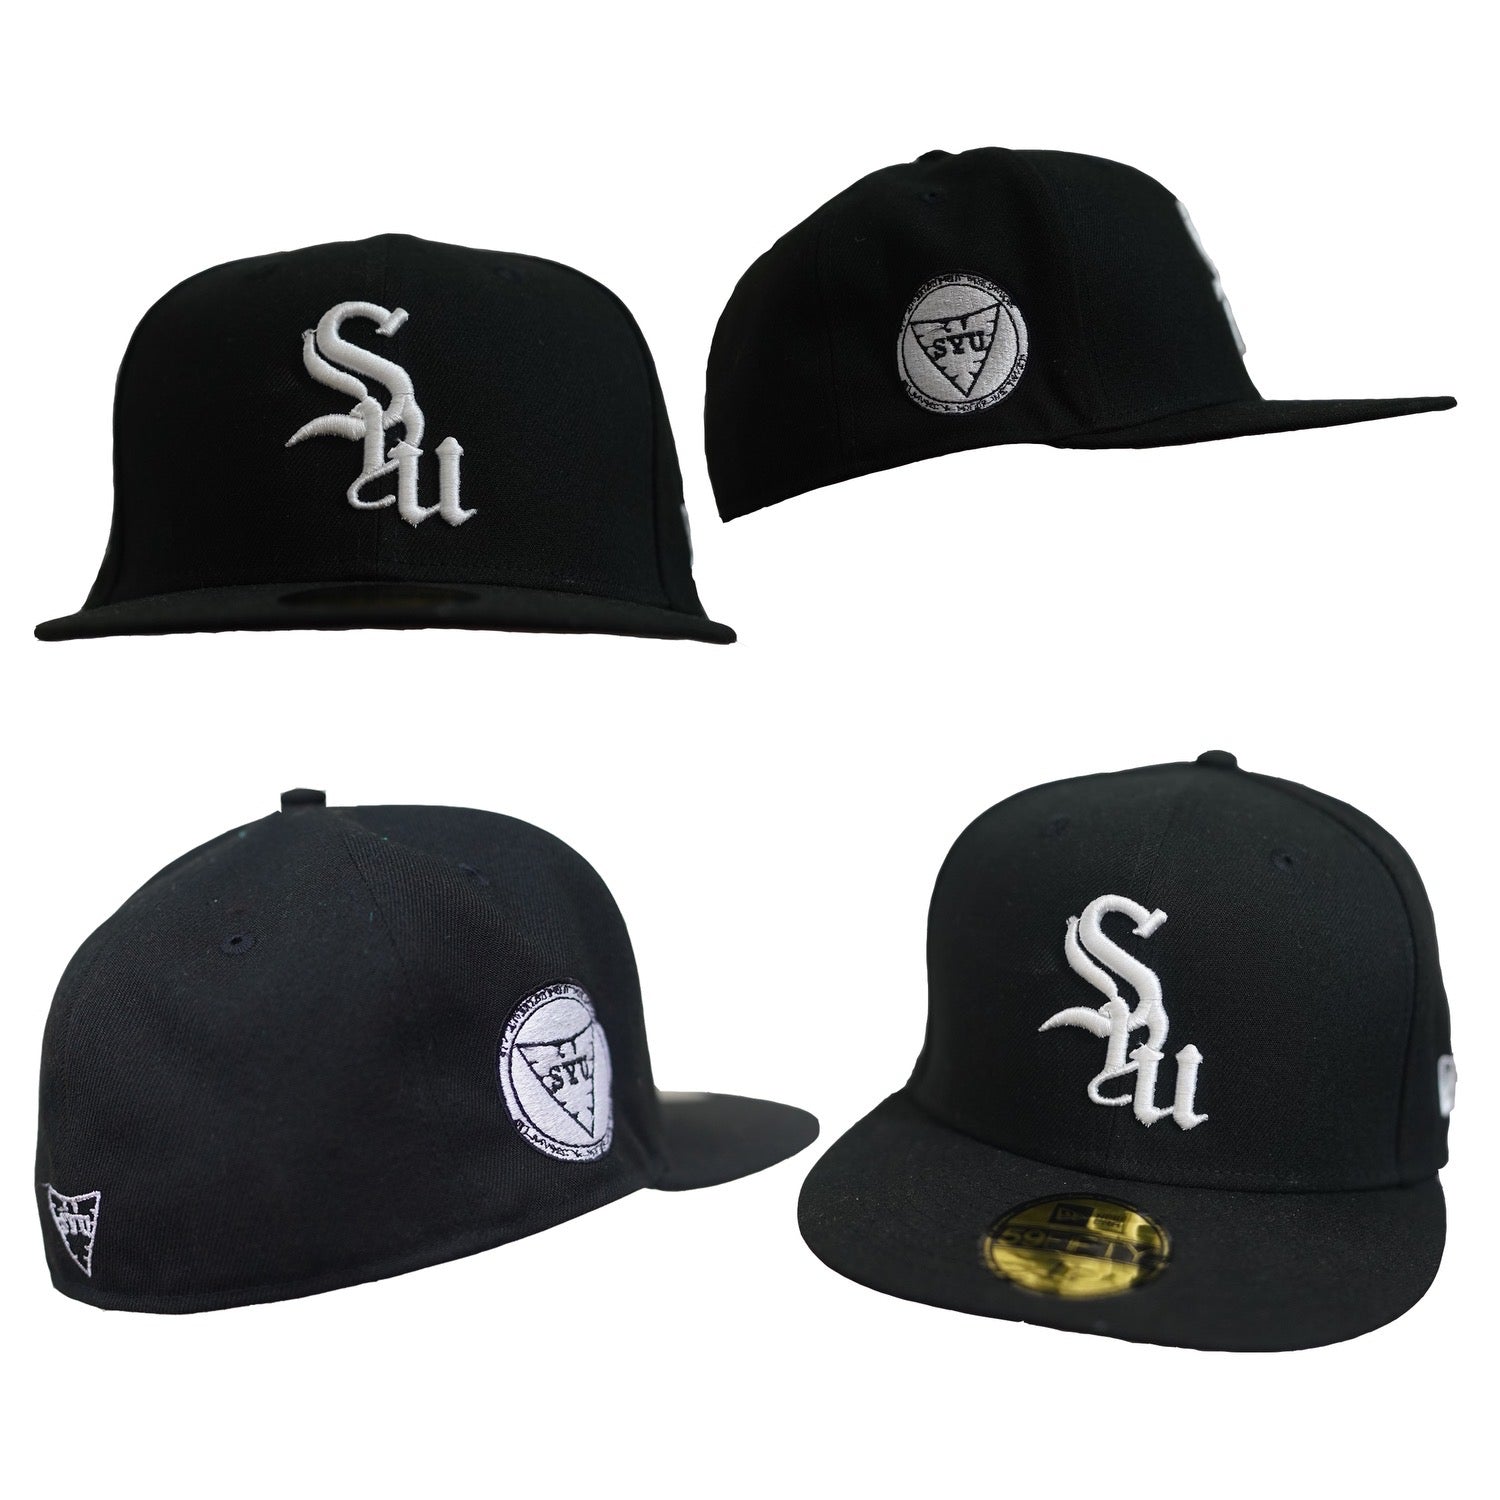 "Syu" Soon Black Hat